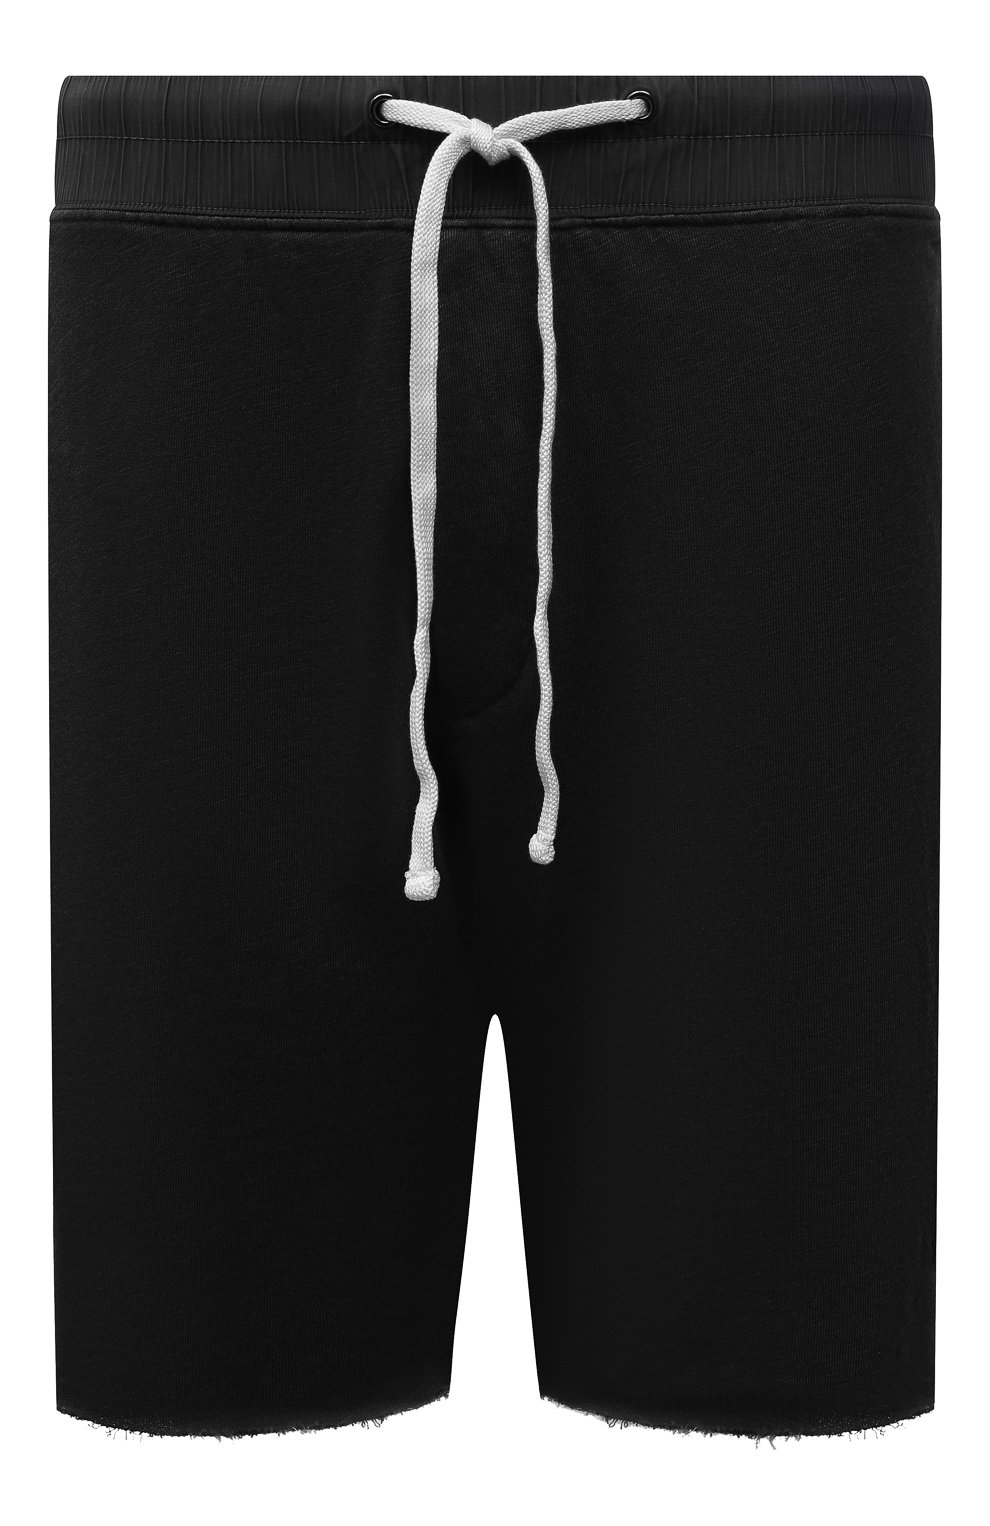 Мужские хлопковые шорты JAMES PERSE темно-серого цвета, арт. MXA4238 | Фото 1 (Длина Шорты М: До колена; Случай: Повседневный; Материал внешний: Хлопок; Стили: Спорт-шик)